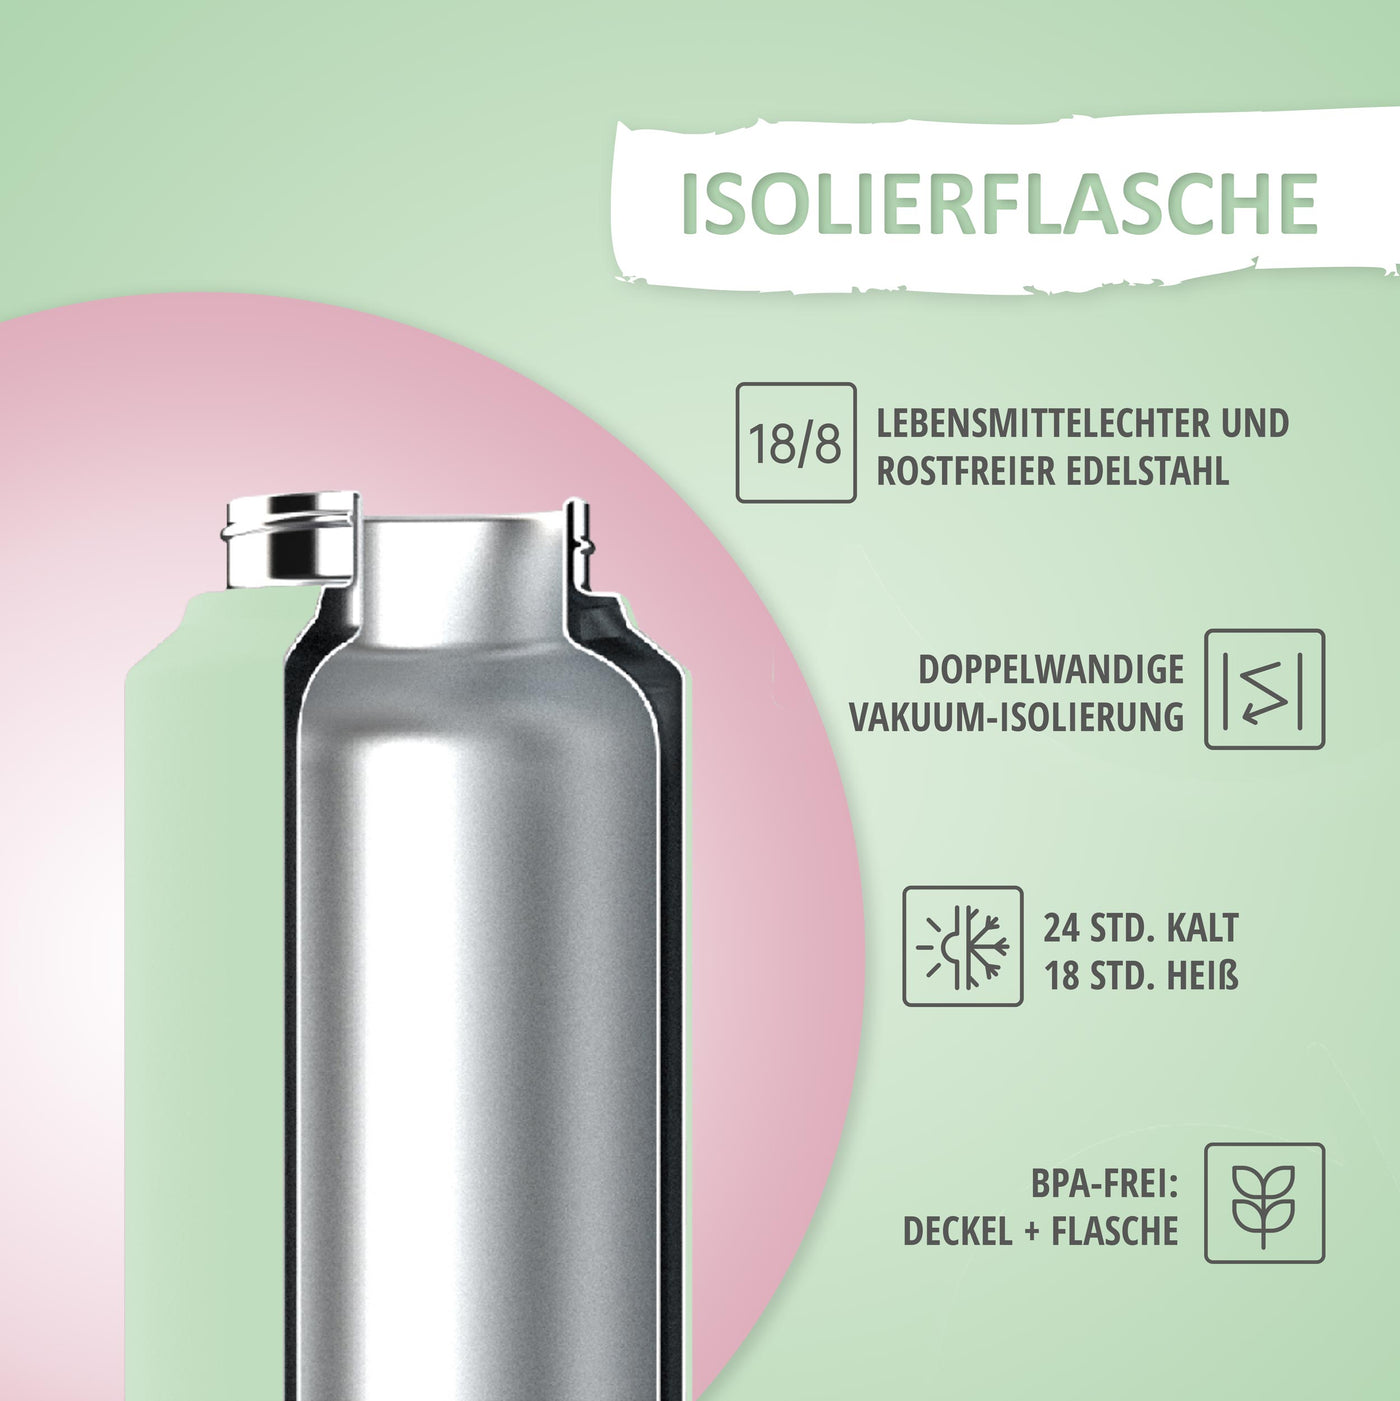 Trinkflasche - 500ml - Light Green/Rosa